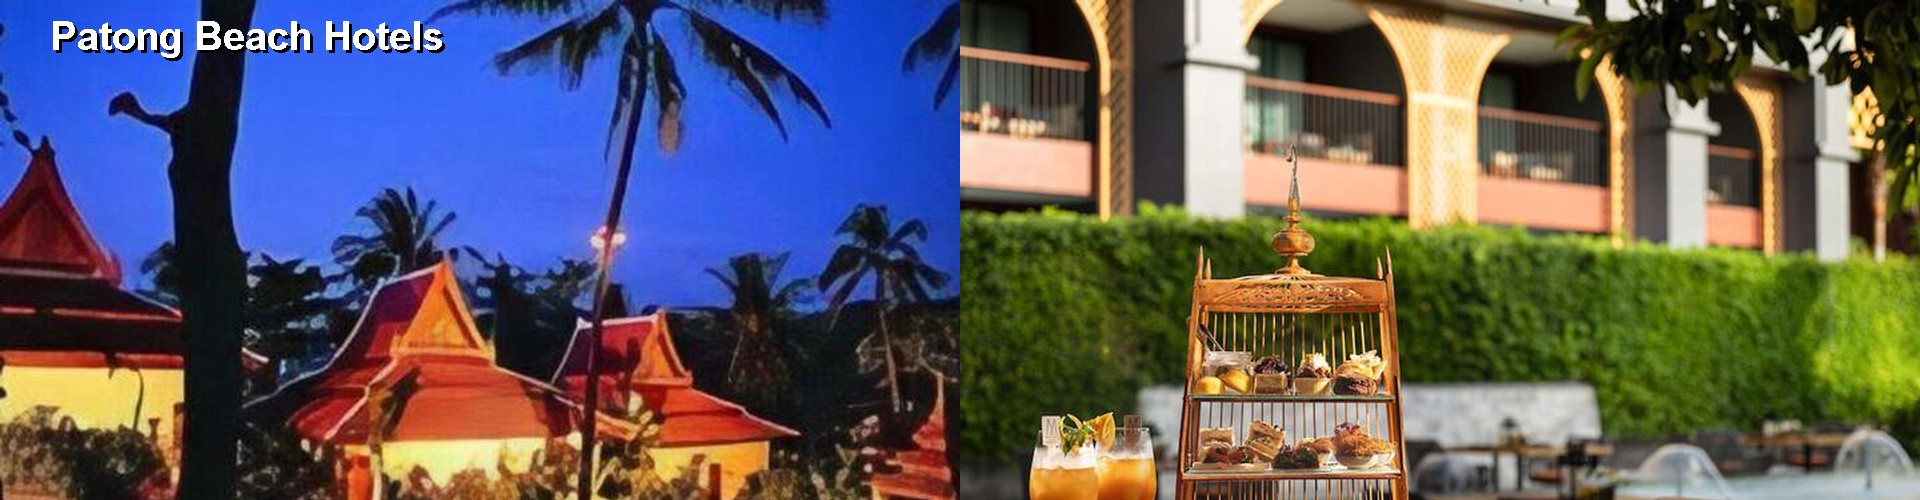 5 Best Hotels near Patong Beach